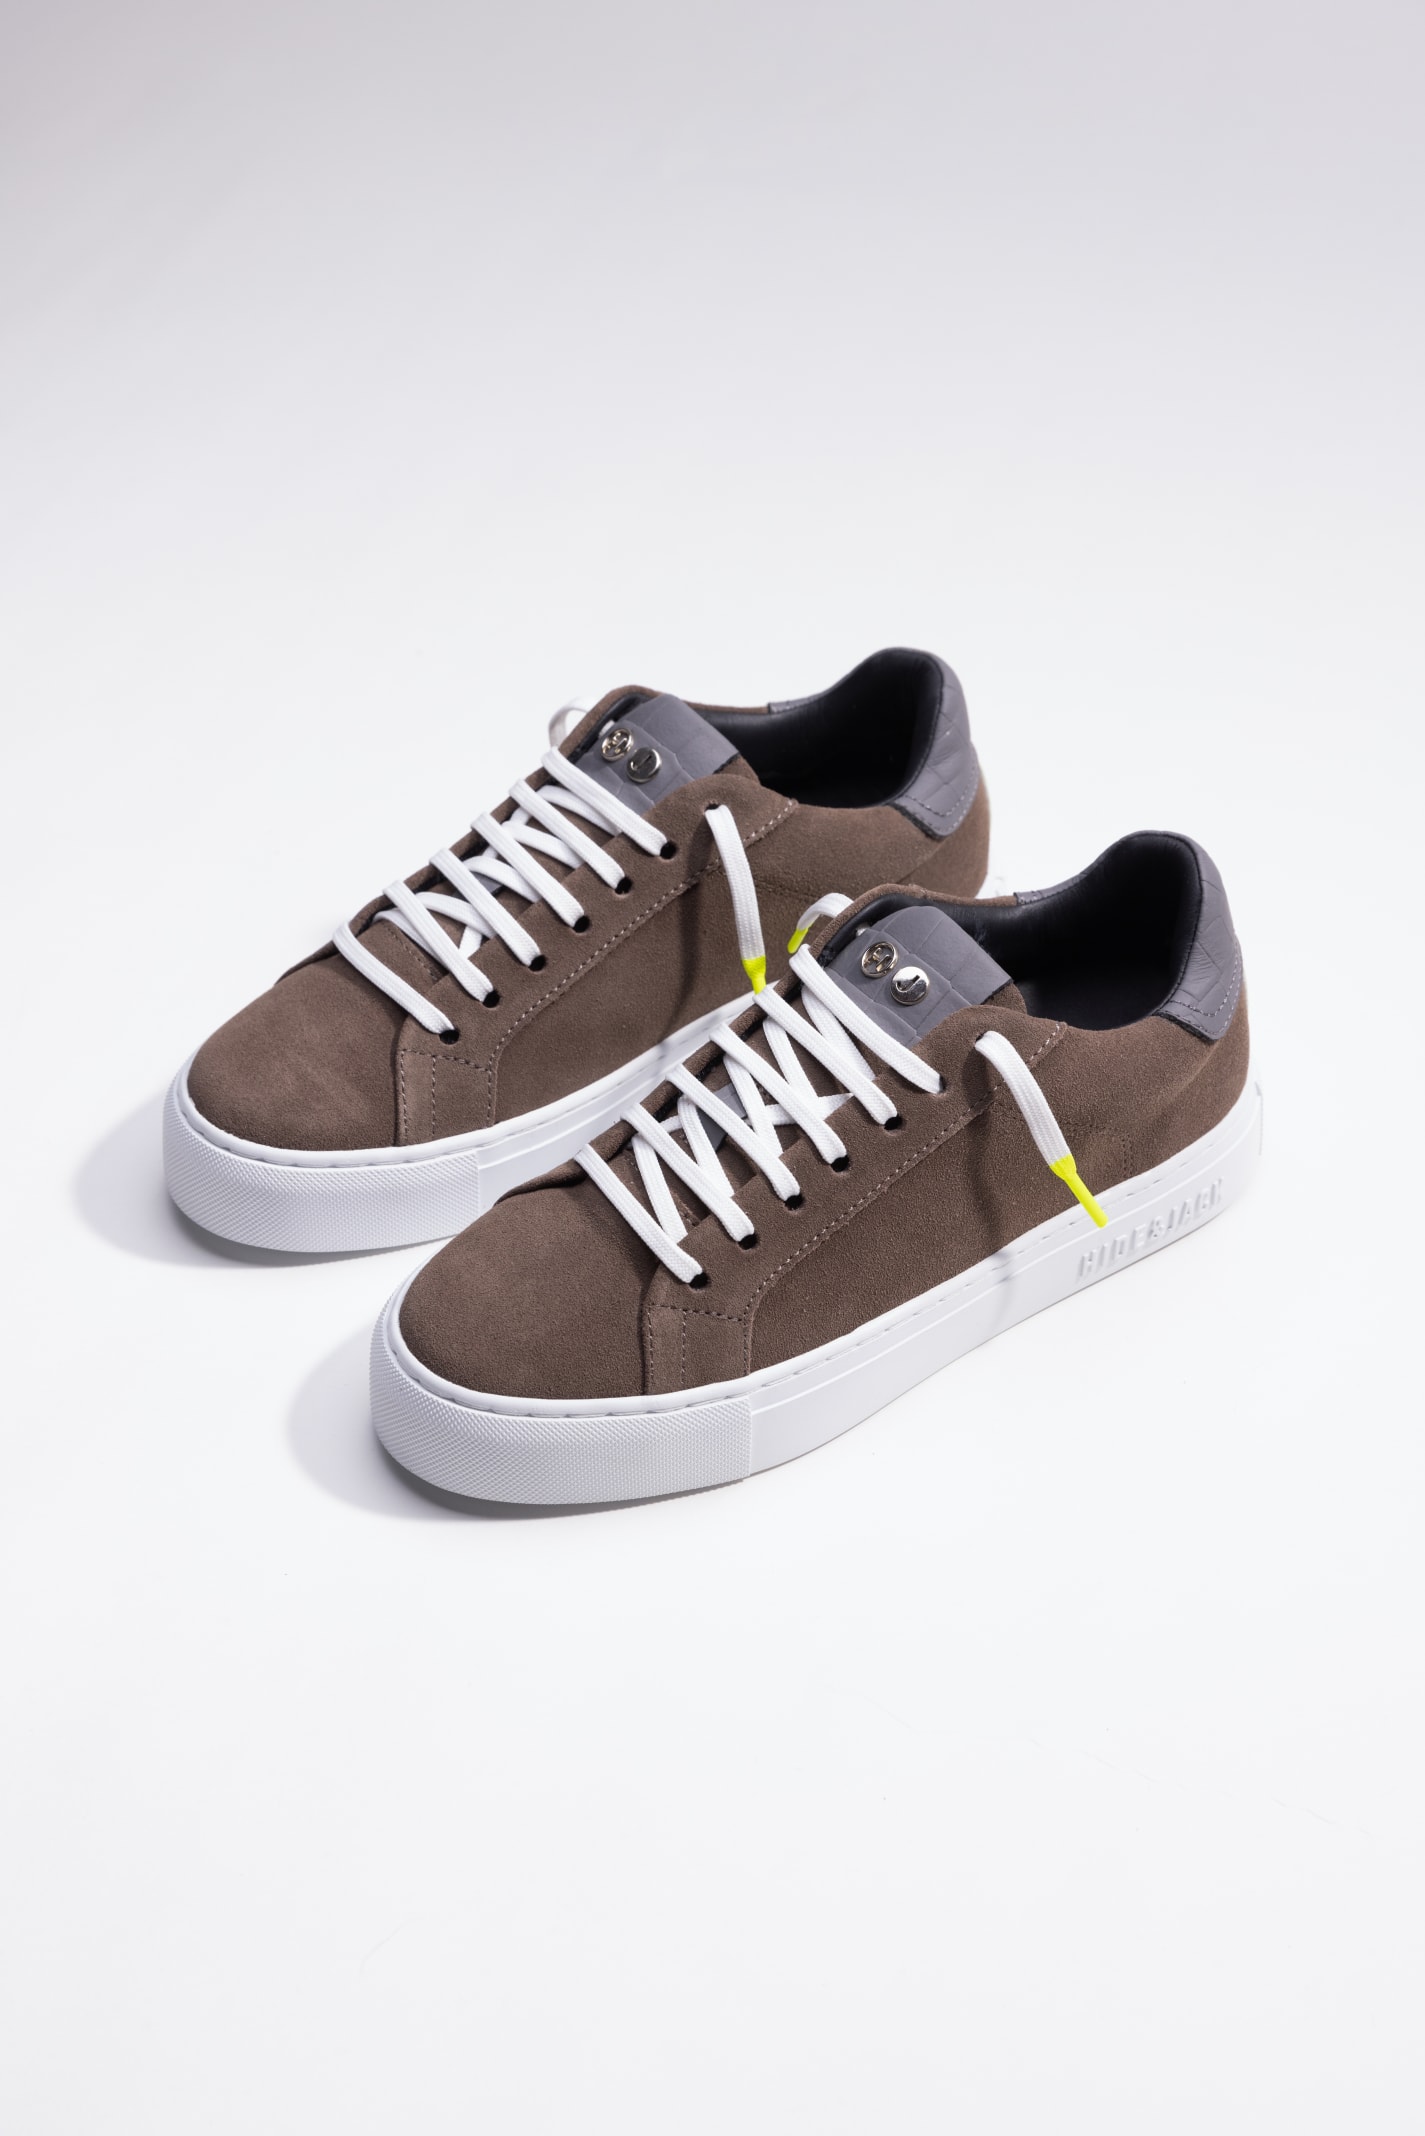 Hide&amp;jack Low Top Sneaker - Essence Oil Beige White In Brown